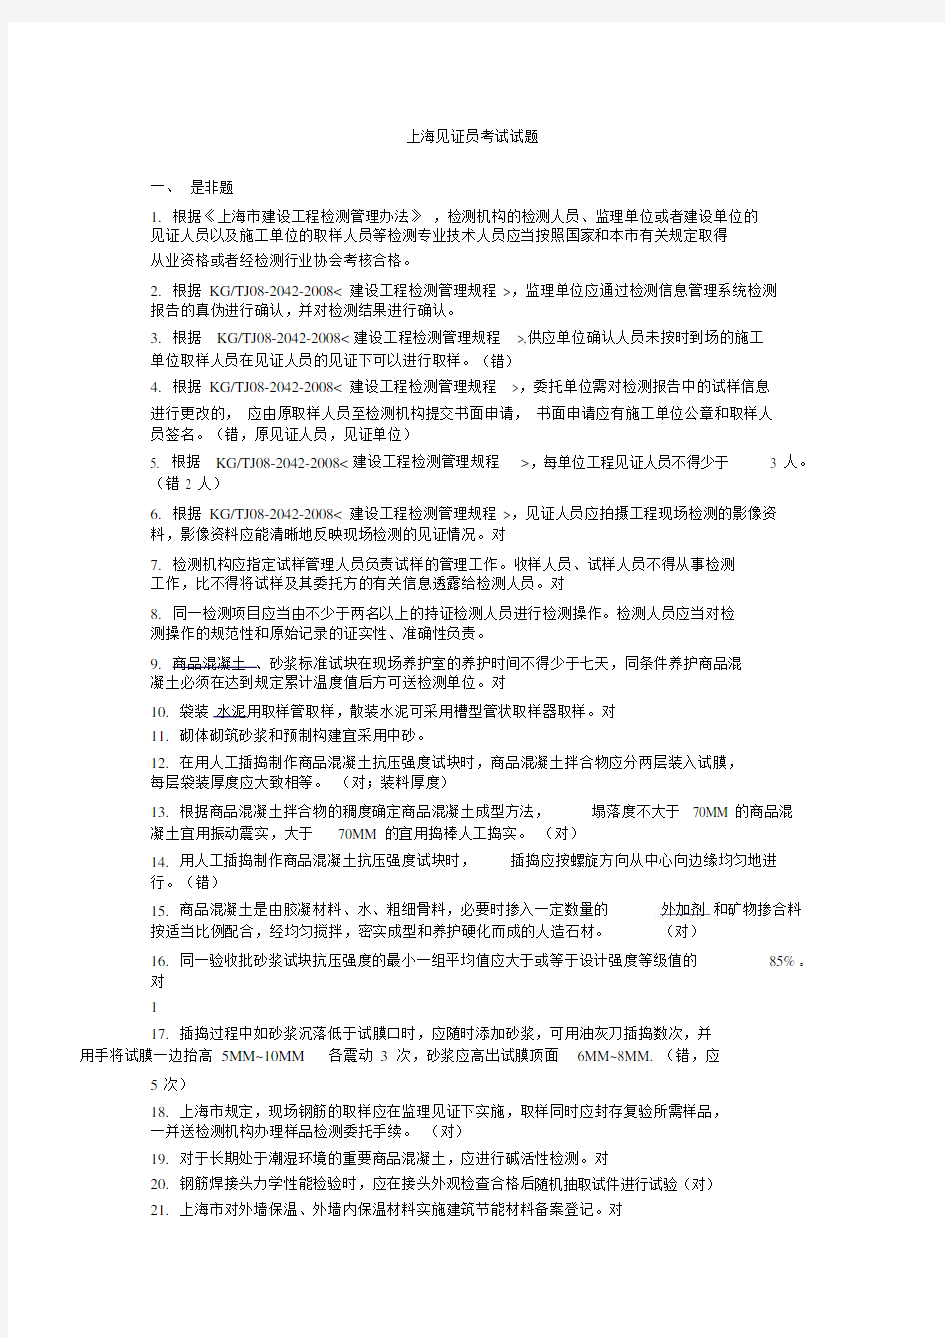 2018年上海见证员考试试题-